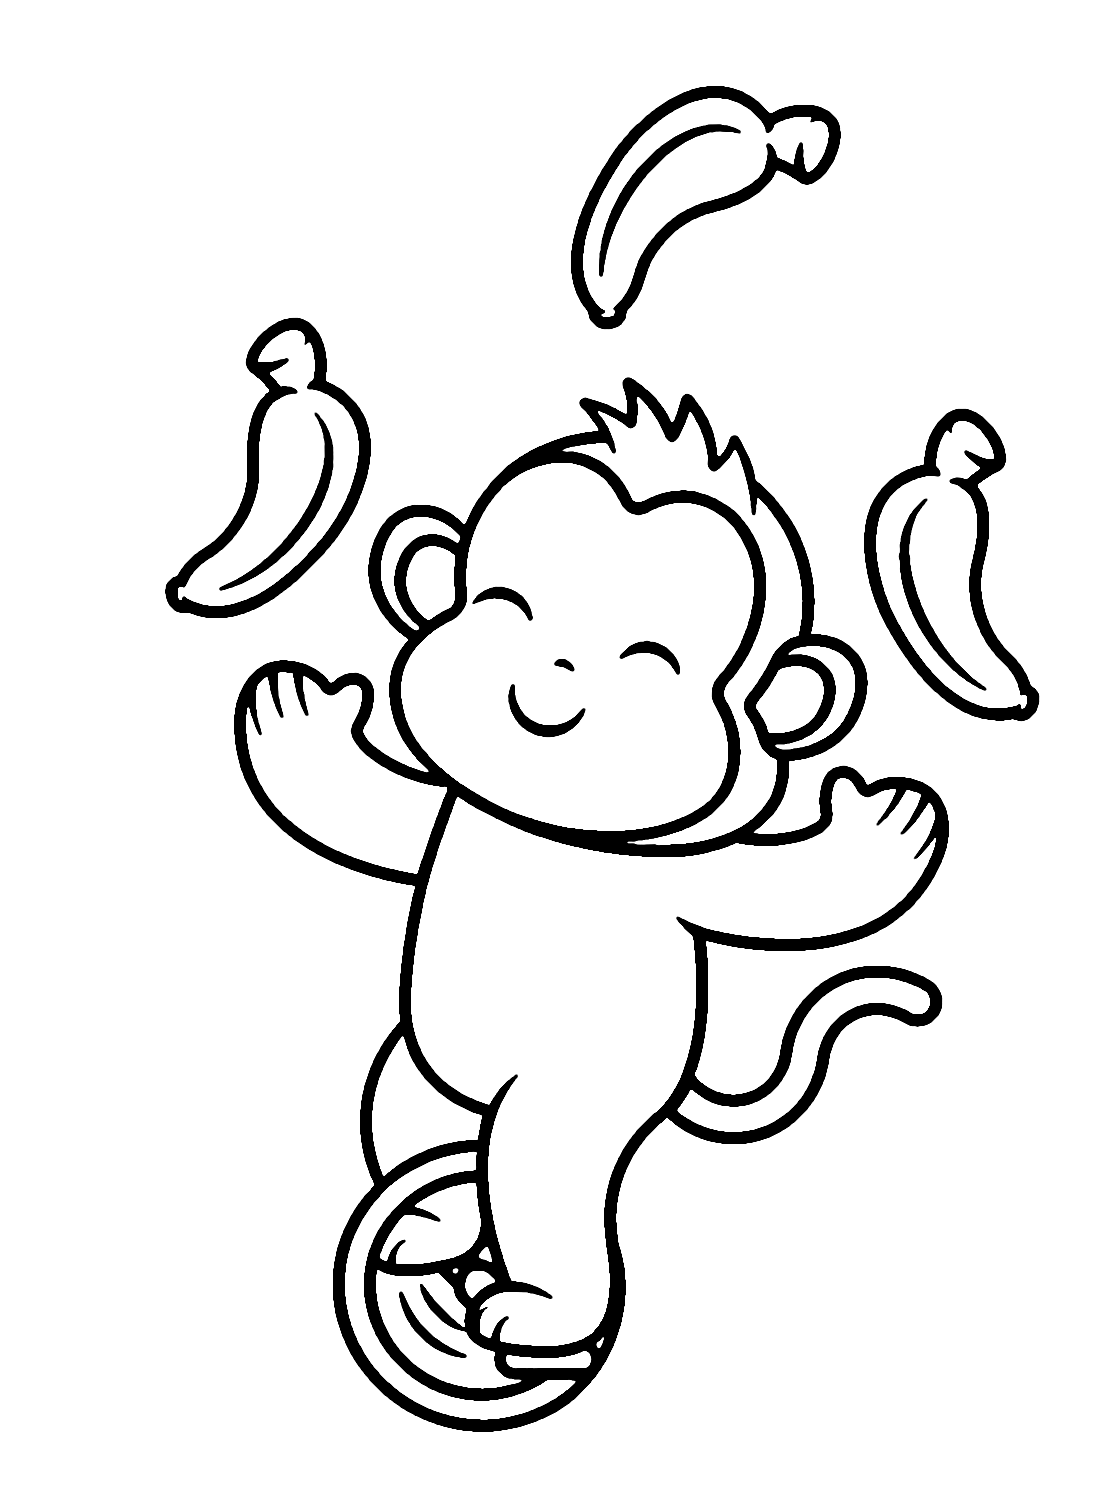 سيرك القرد يلعب الموز بالدراجة الهوائية الأحادية العجلة من الدراجة الهوائية الأحادية العجلة